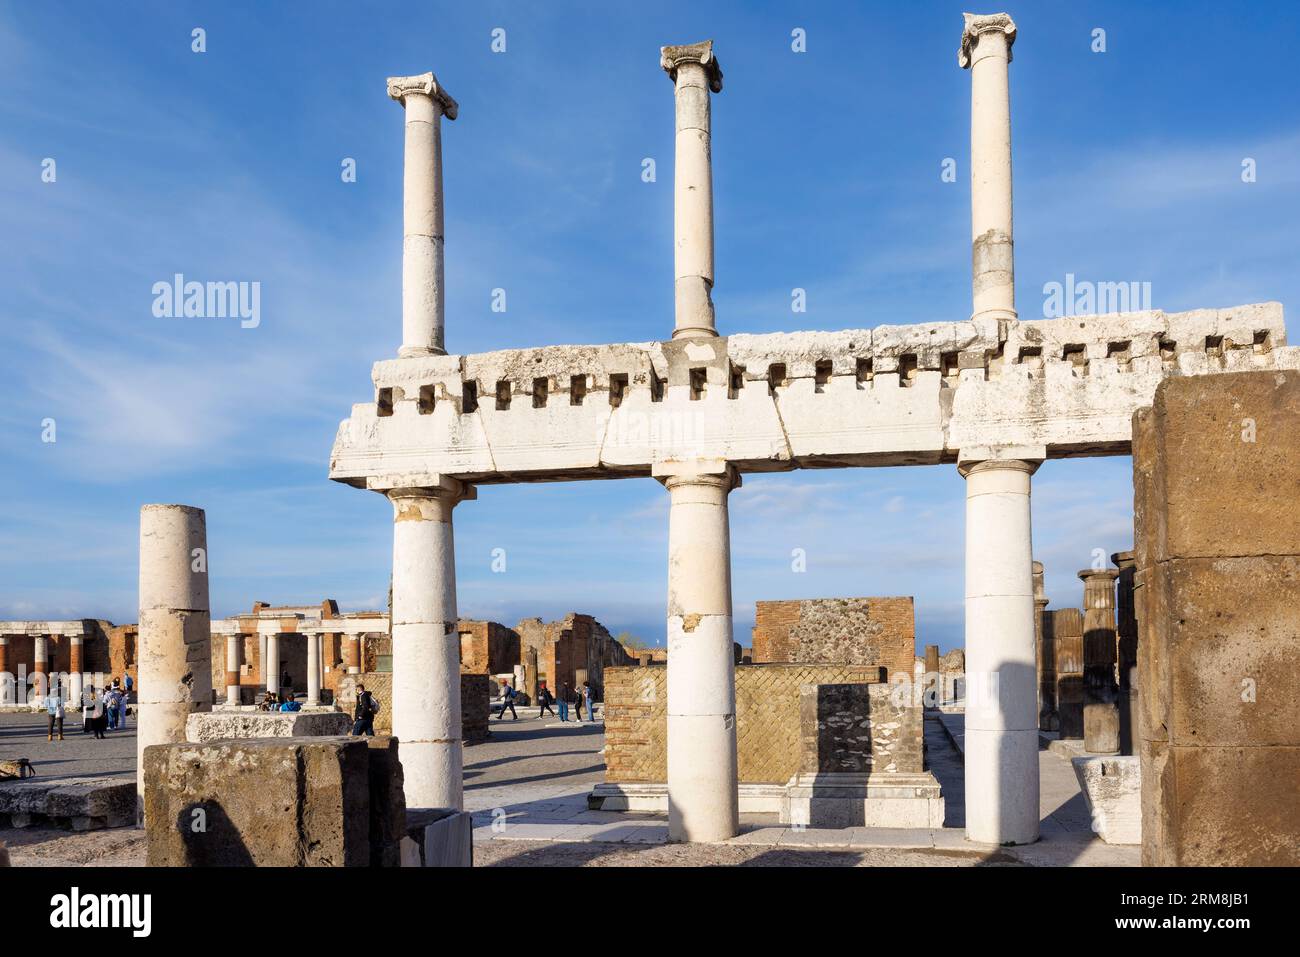 Sito archeologico di Pompei, Campania, Italia. Il Forum. Pompei, Ercolano e Torre Annunziata sono collettivamente dichiarati patrimonio mondiale dell'UNESCO Foto Stock